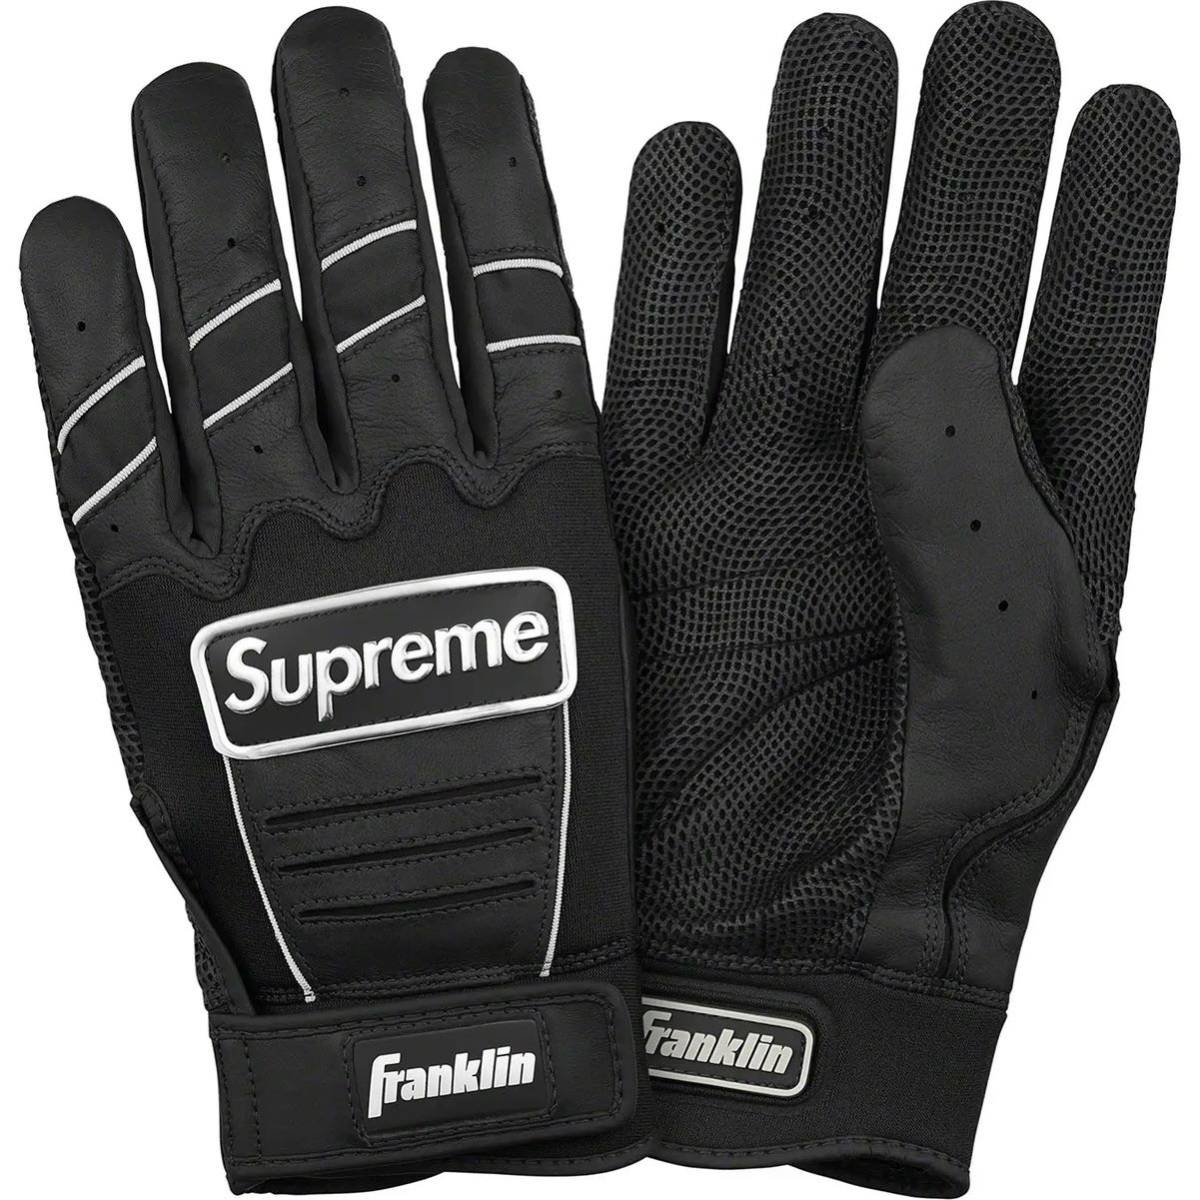 新品】 22ss Supreme/Franklin CFX Pro Batting Glove Lサイズブラック